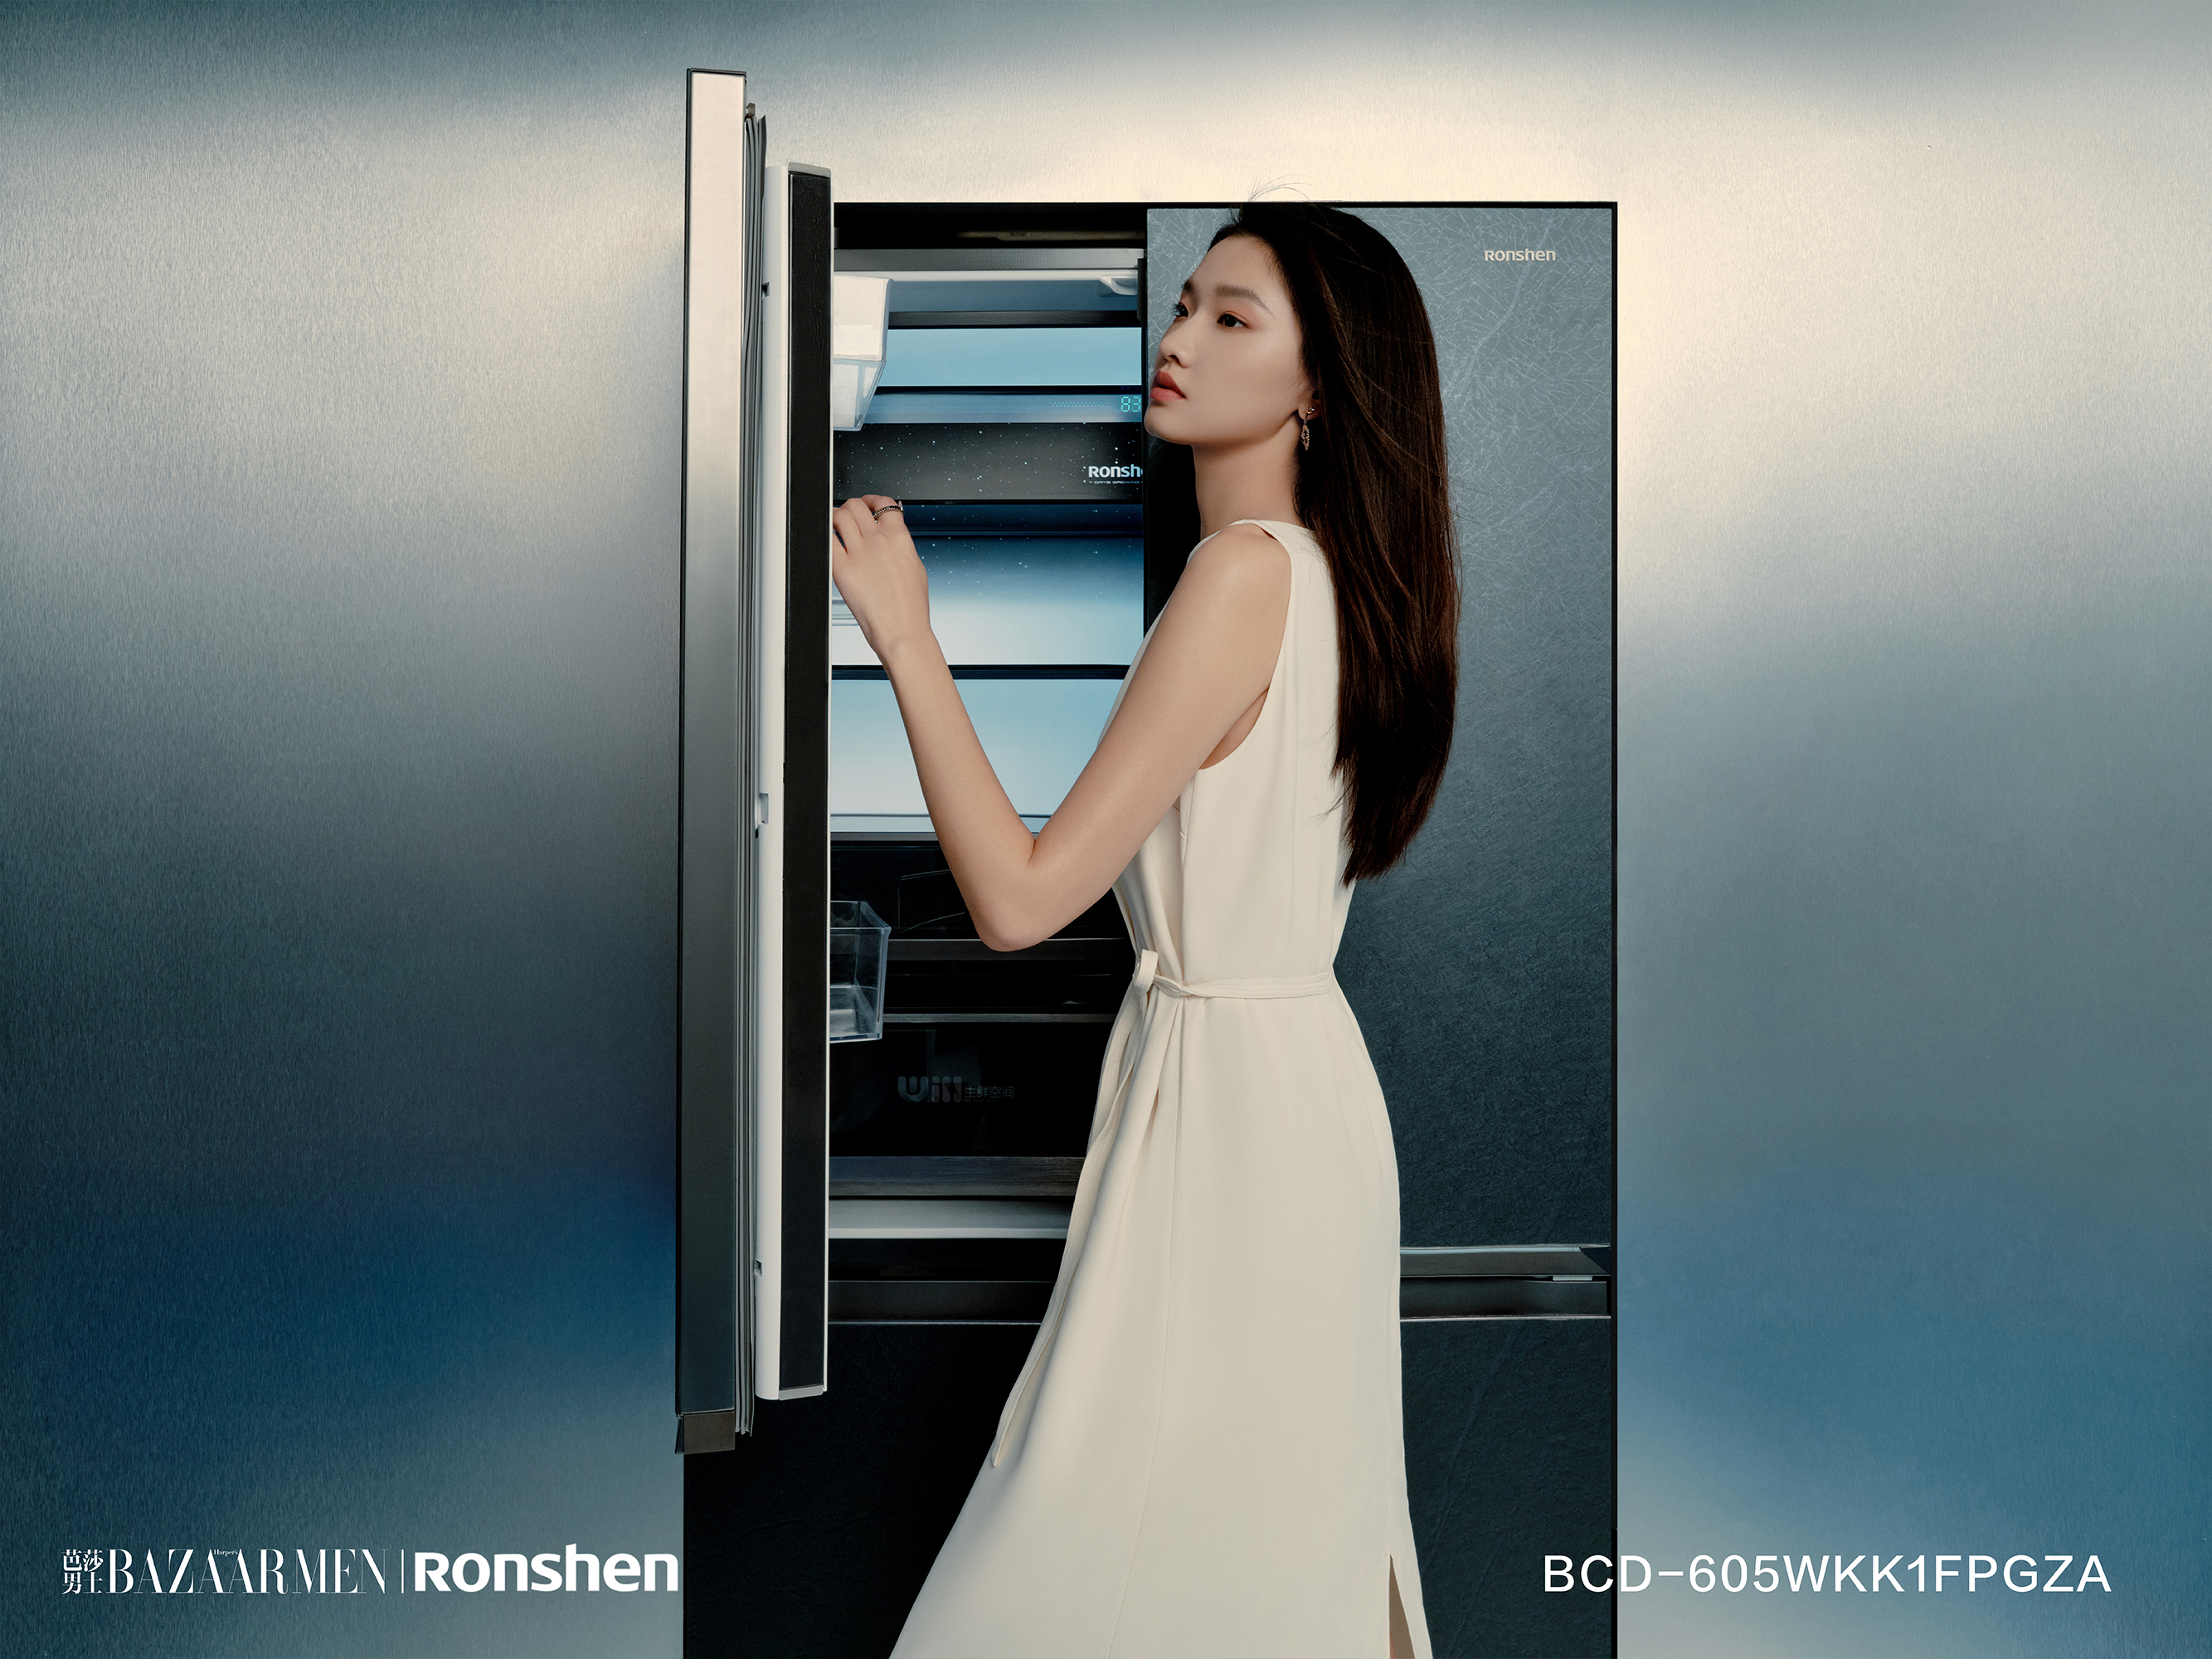 嵌入式冰箱持续“走红” 容声冰箱引领潮流创新“无界空间”